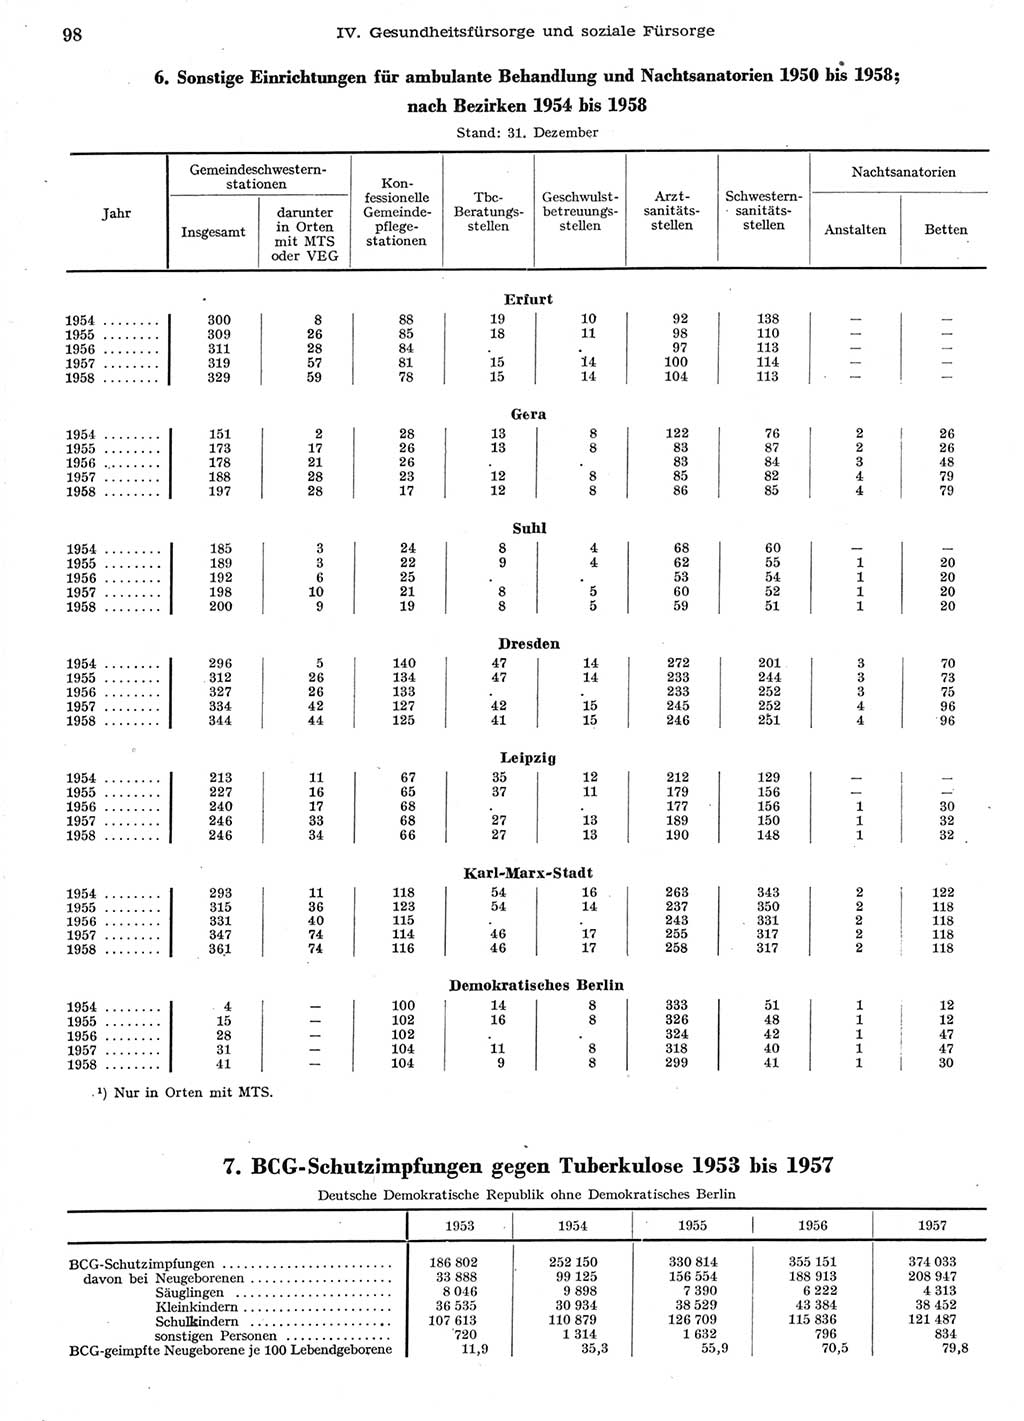 Statistisches Jahrbuch der Deutschen Demokratischen Republik (DDR) 1958, Seite 98 (Stat. Jb. DDR 1958, S. 98)